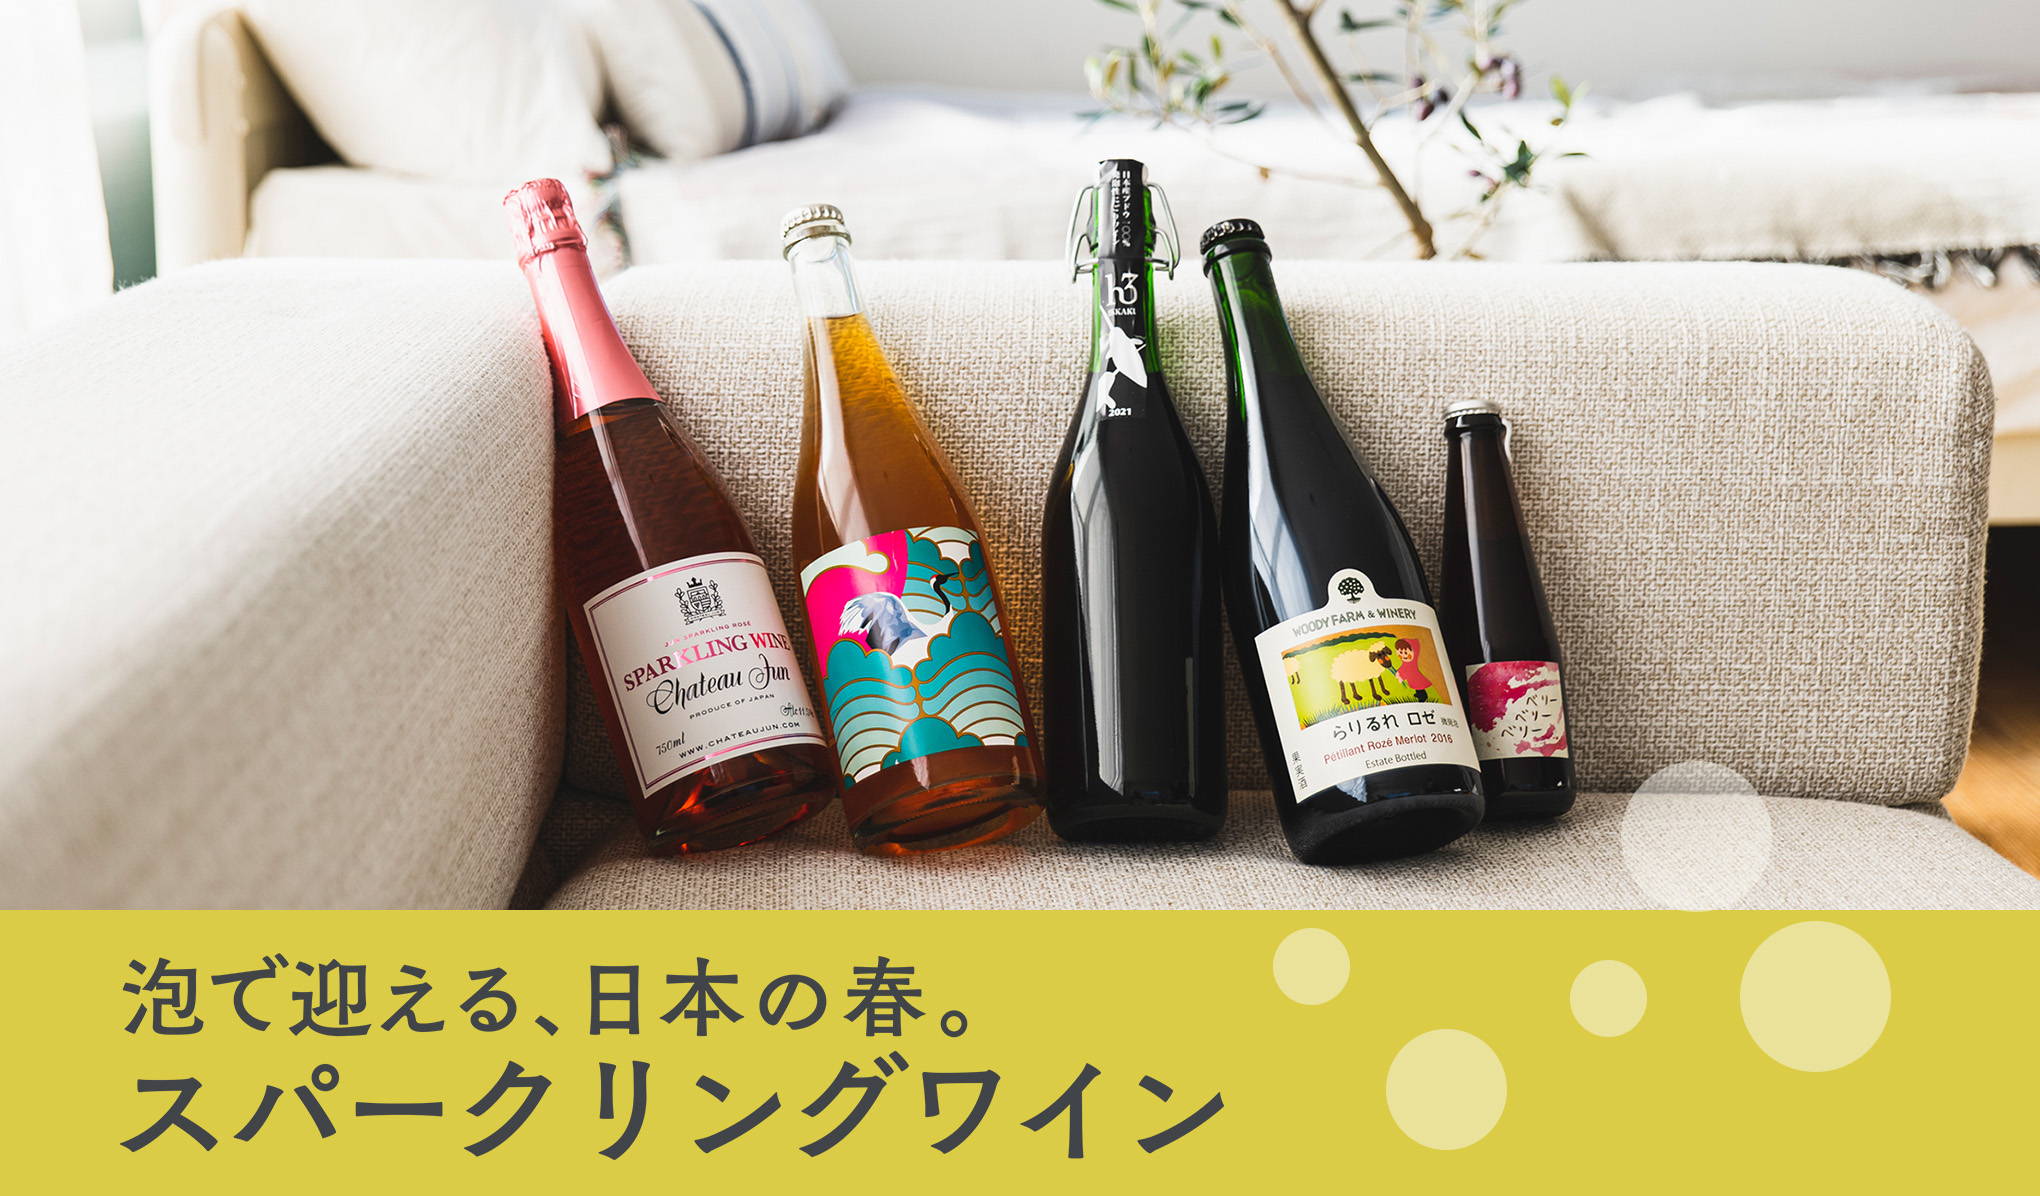 泡で迎える、日本の春。スパークリングワイン